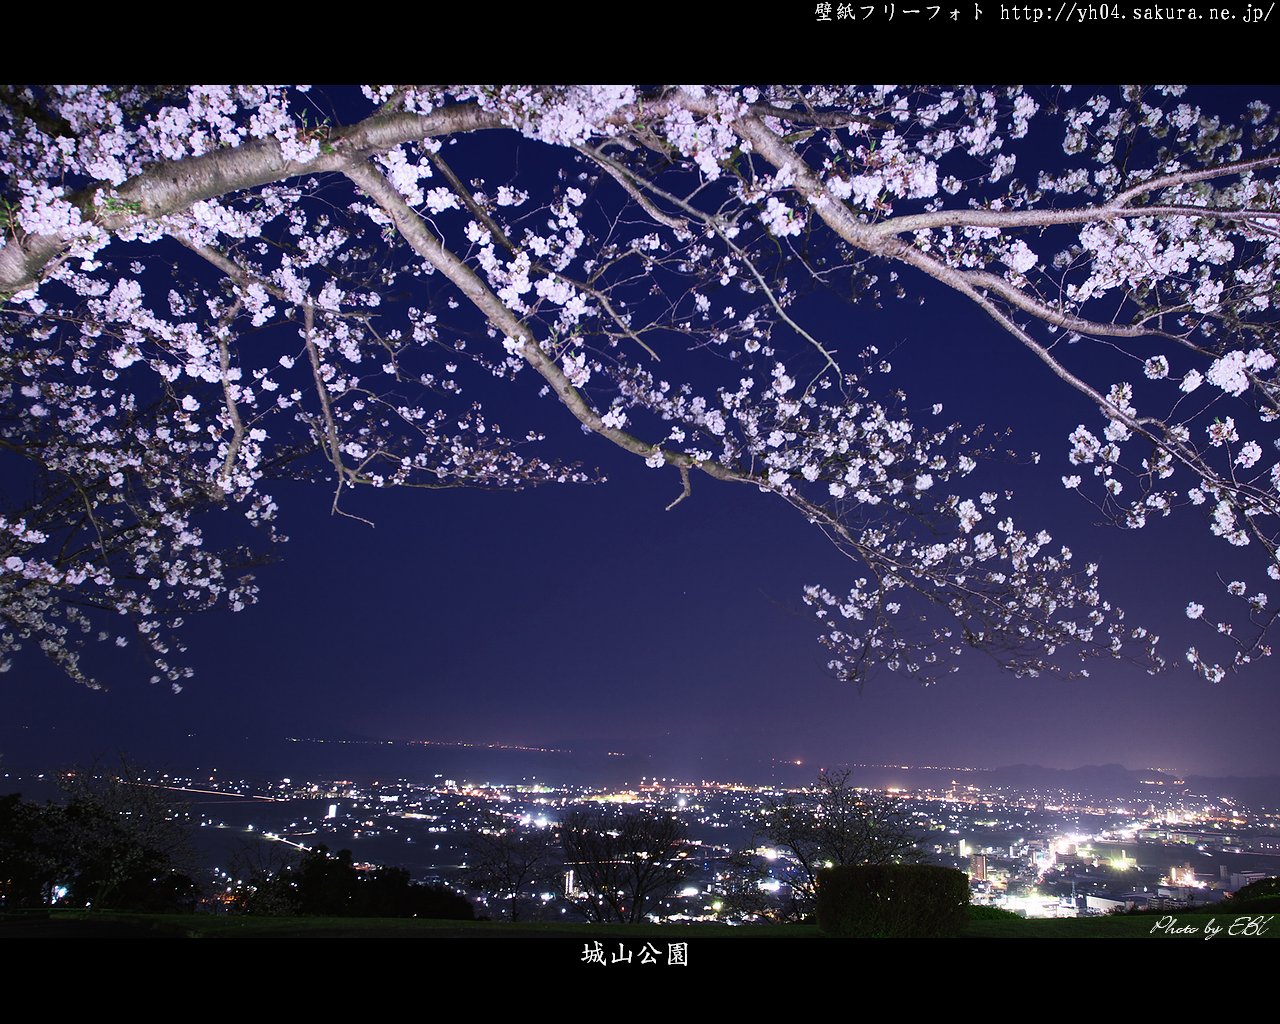 霧島市城山公園のライトアップされた桜と夜景 高画質 高解像度 1280 1024 デスクトップ無料壁紙